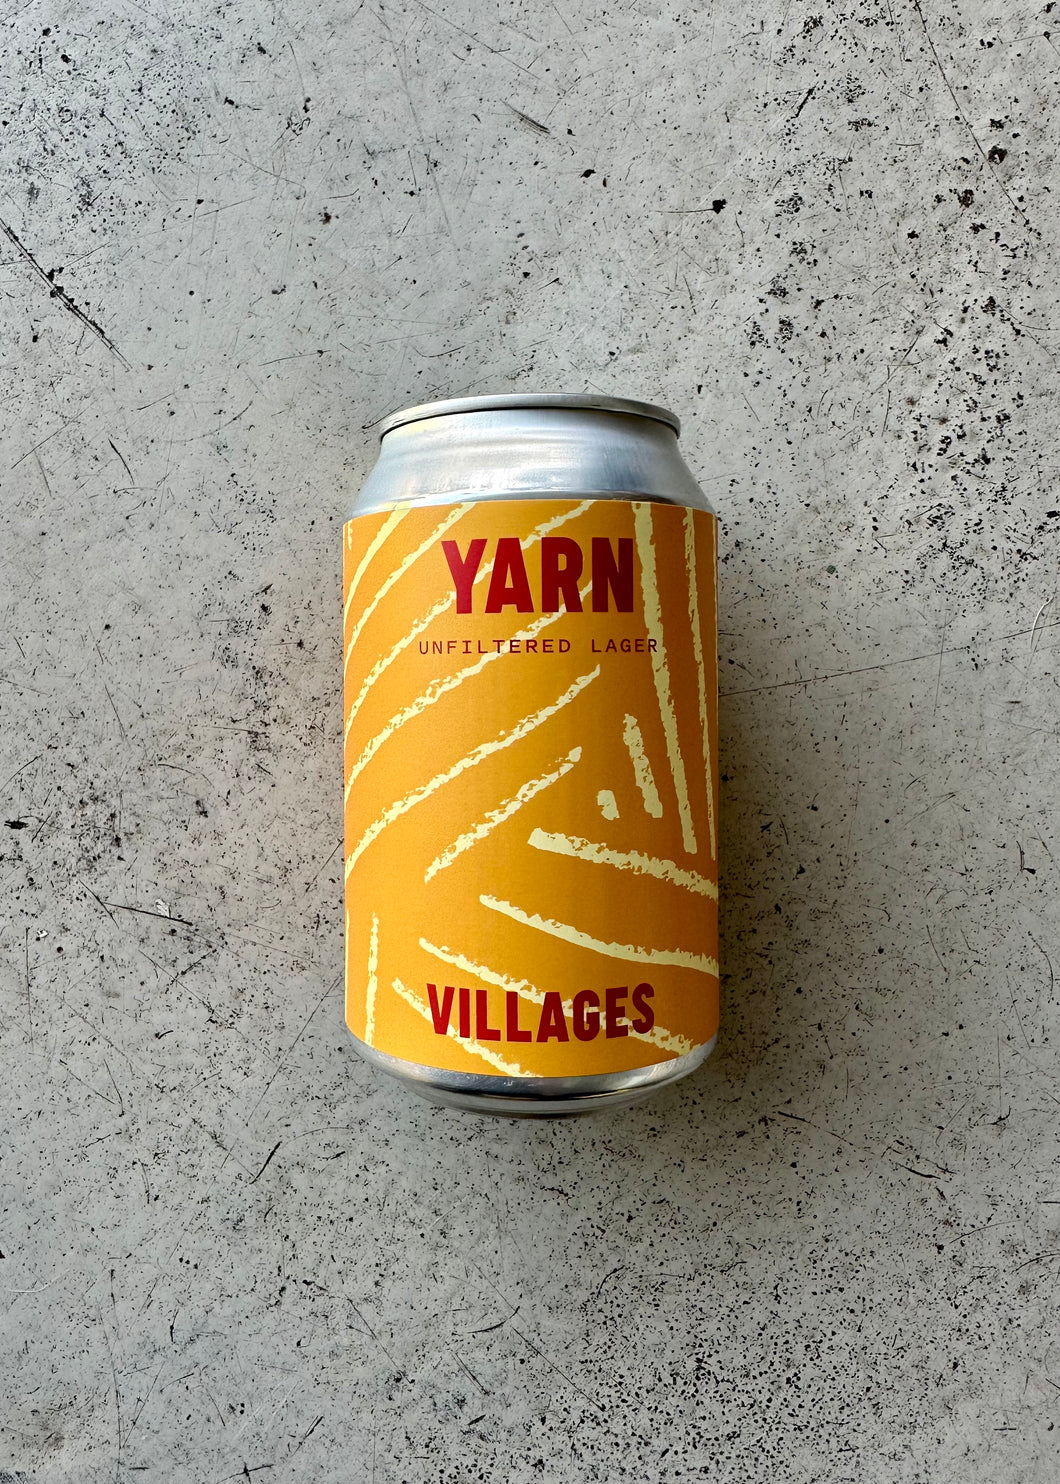 Villages Yarn 4.4% (330ml)